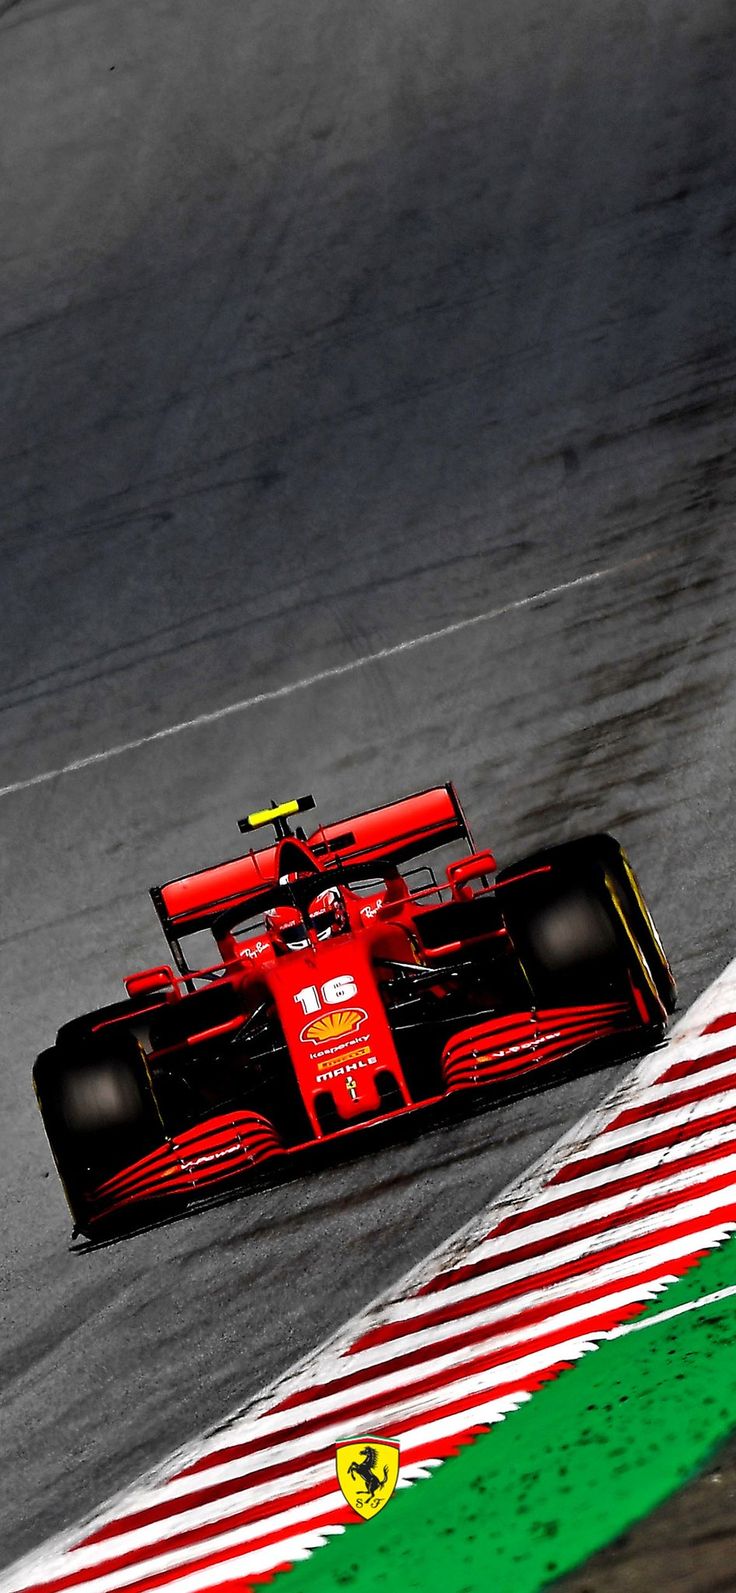 Scuderia Ferrari on Twitter. Formula 1 iphone wallpaper, Car iphone wallpaper, Ferrari